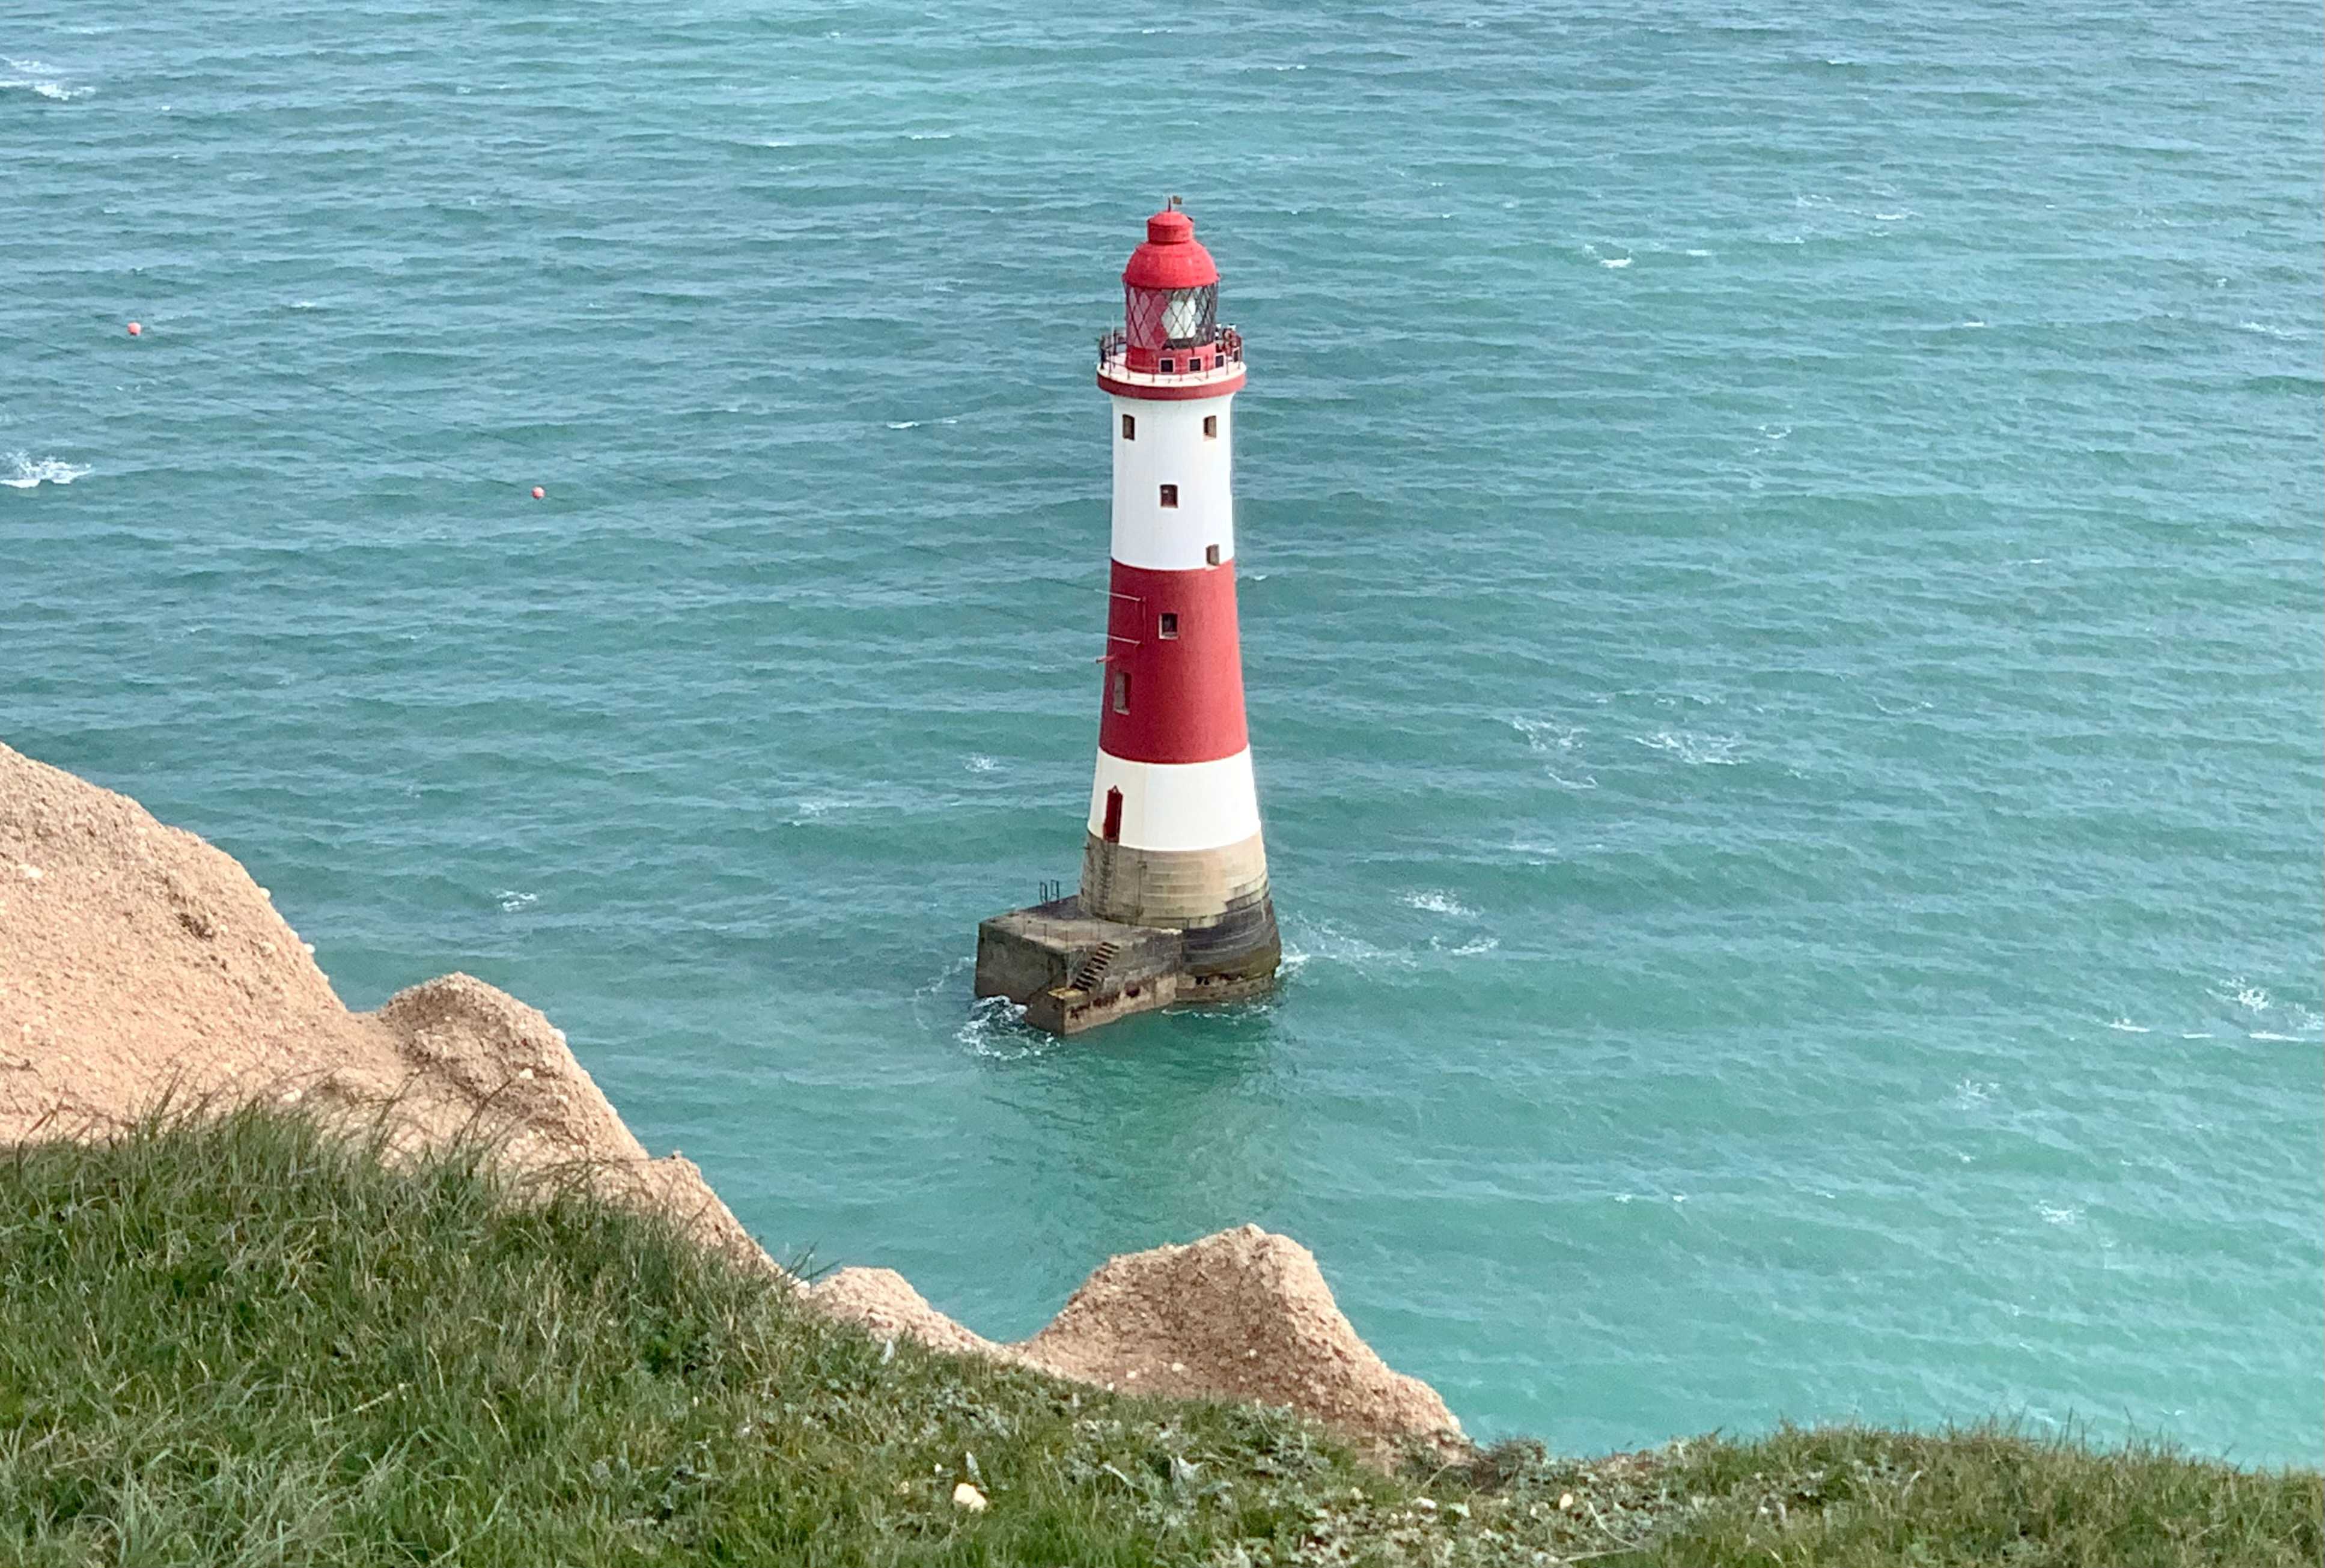 The famous beachy head lighthouse